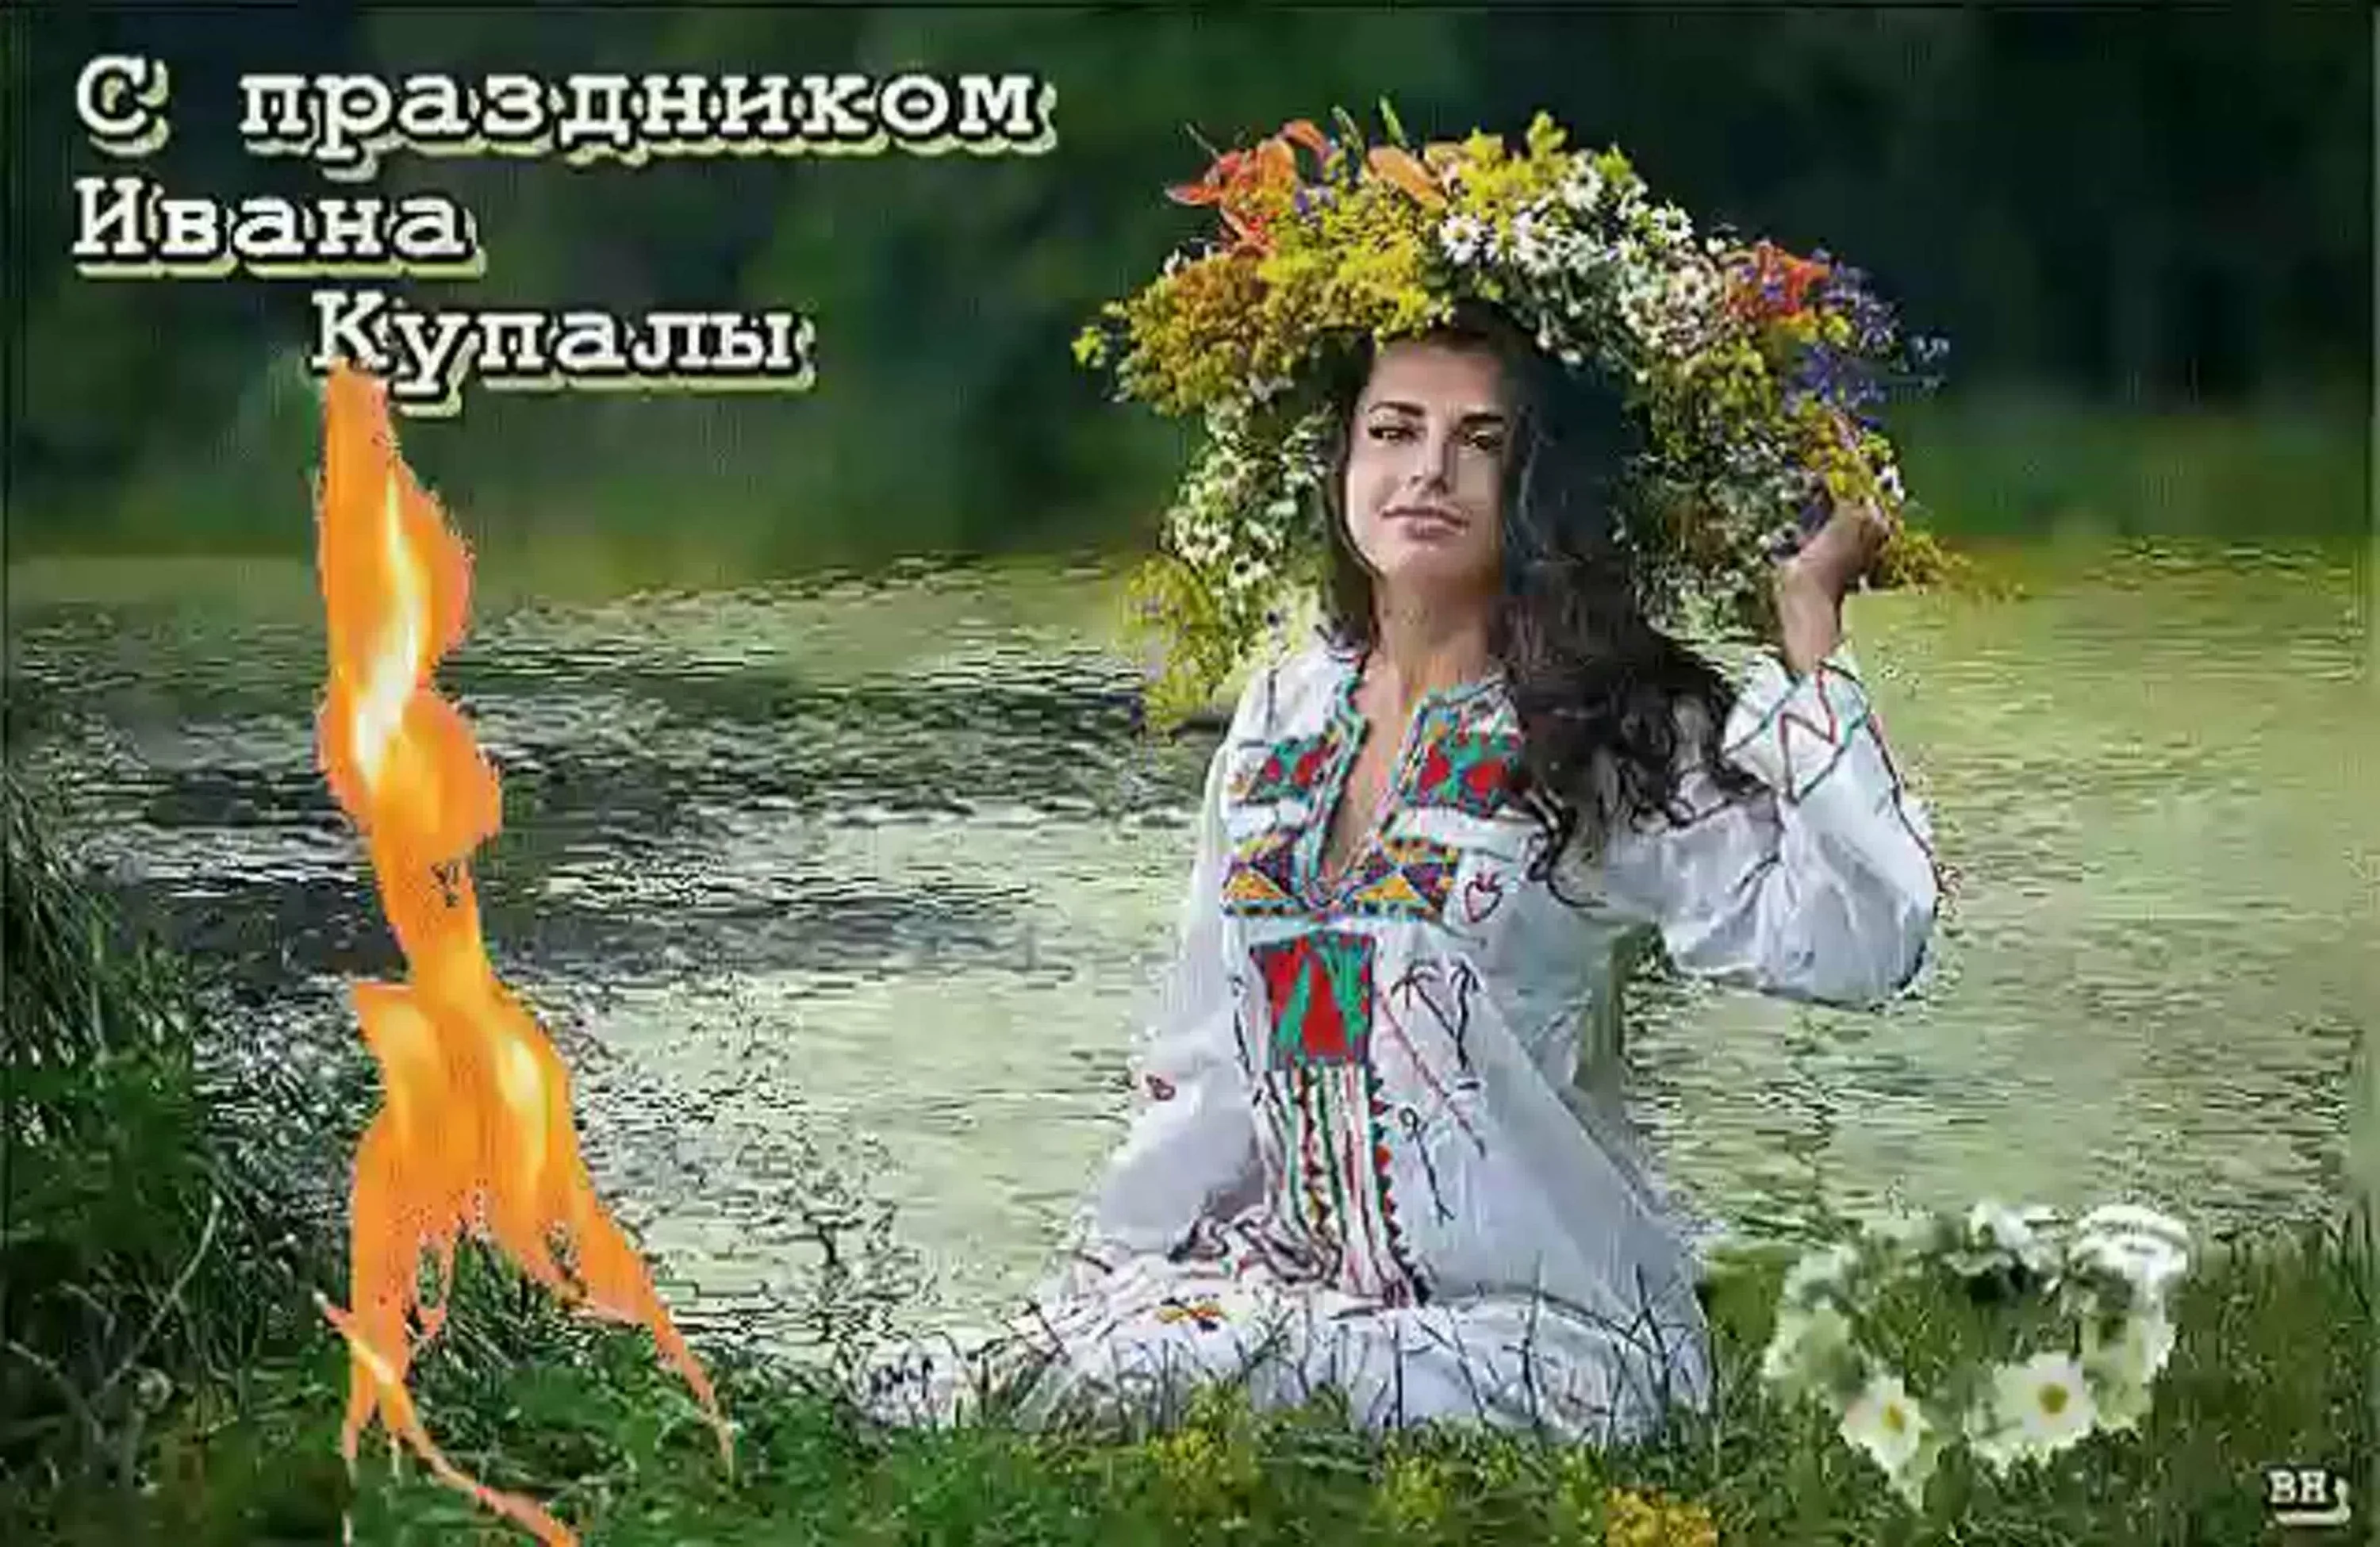 Фото Привітання з Івана купала на українській мові #79